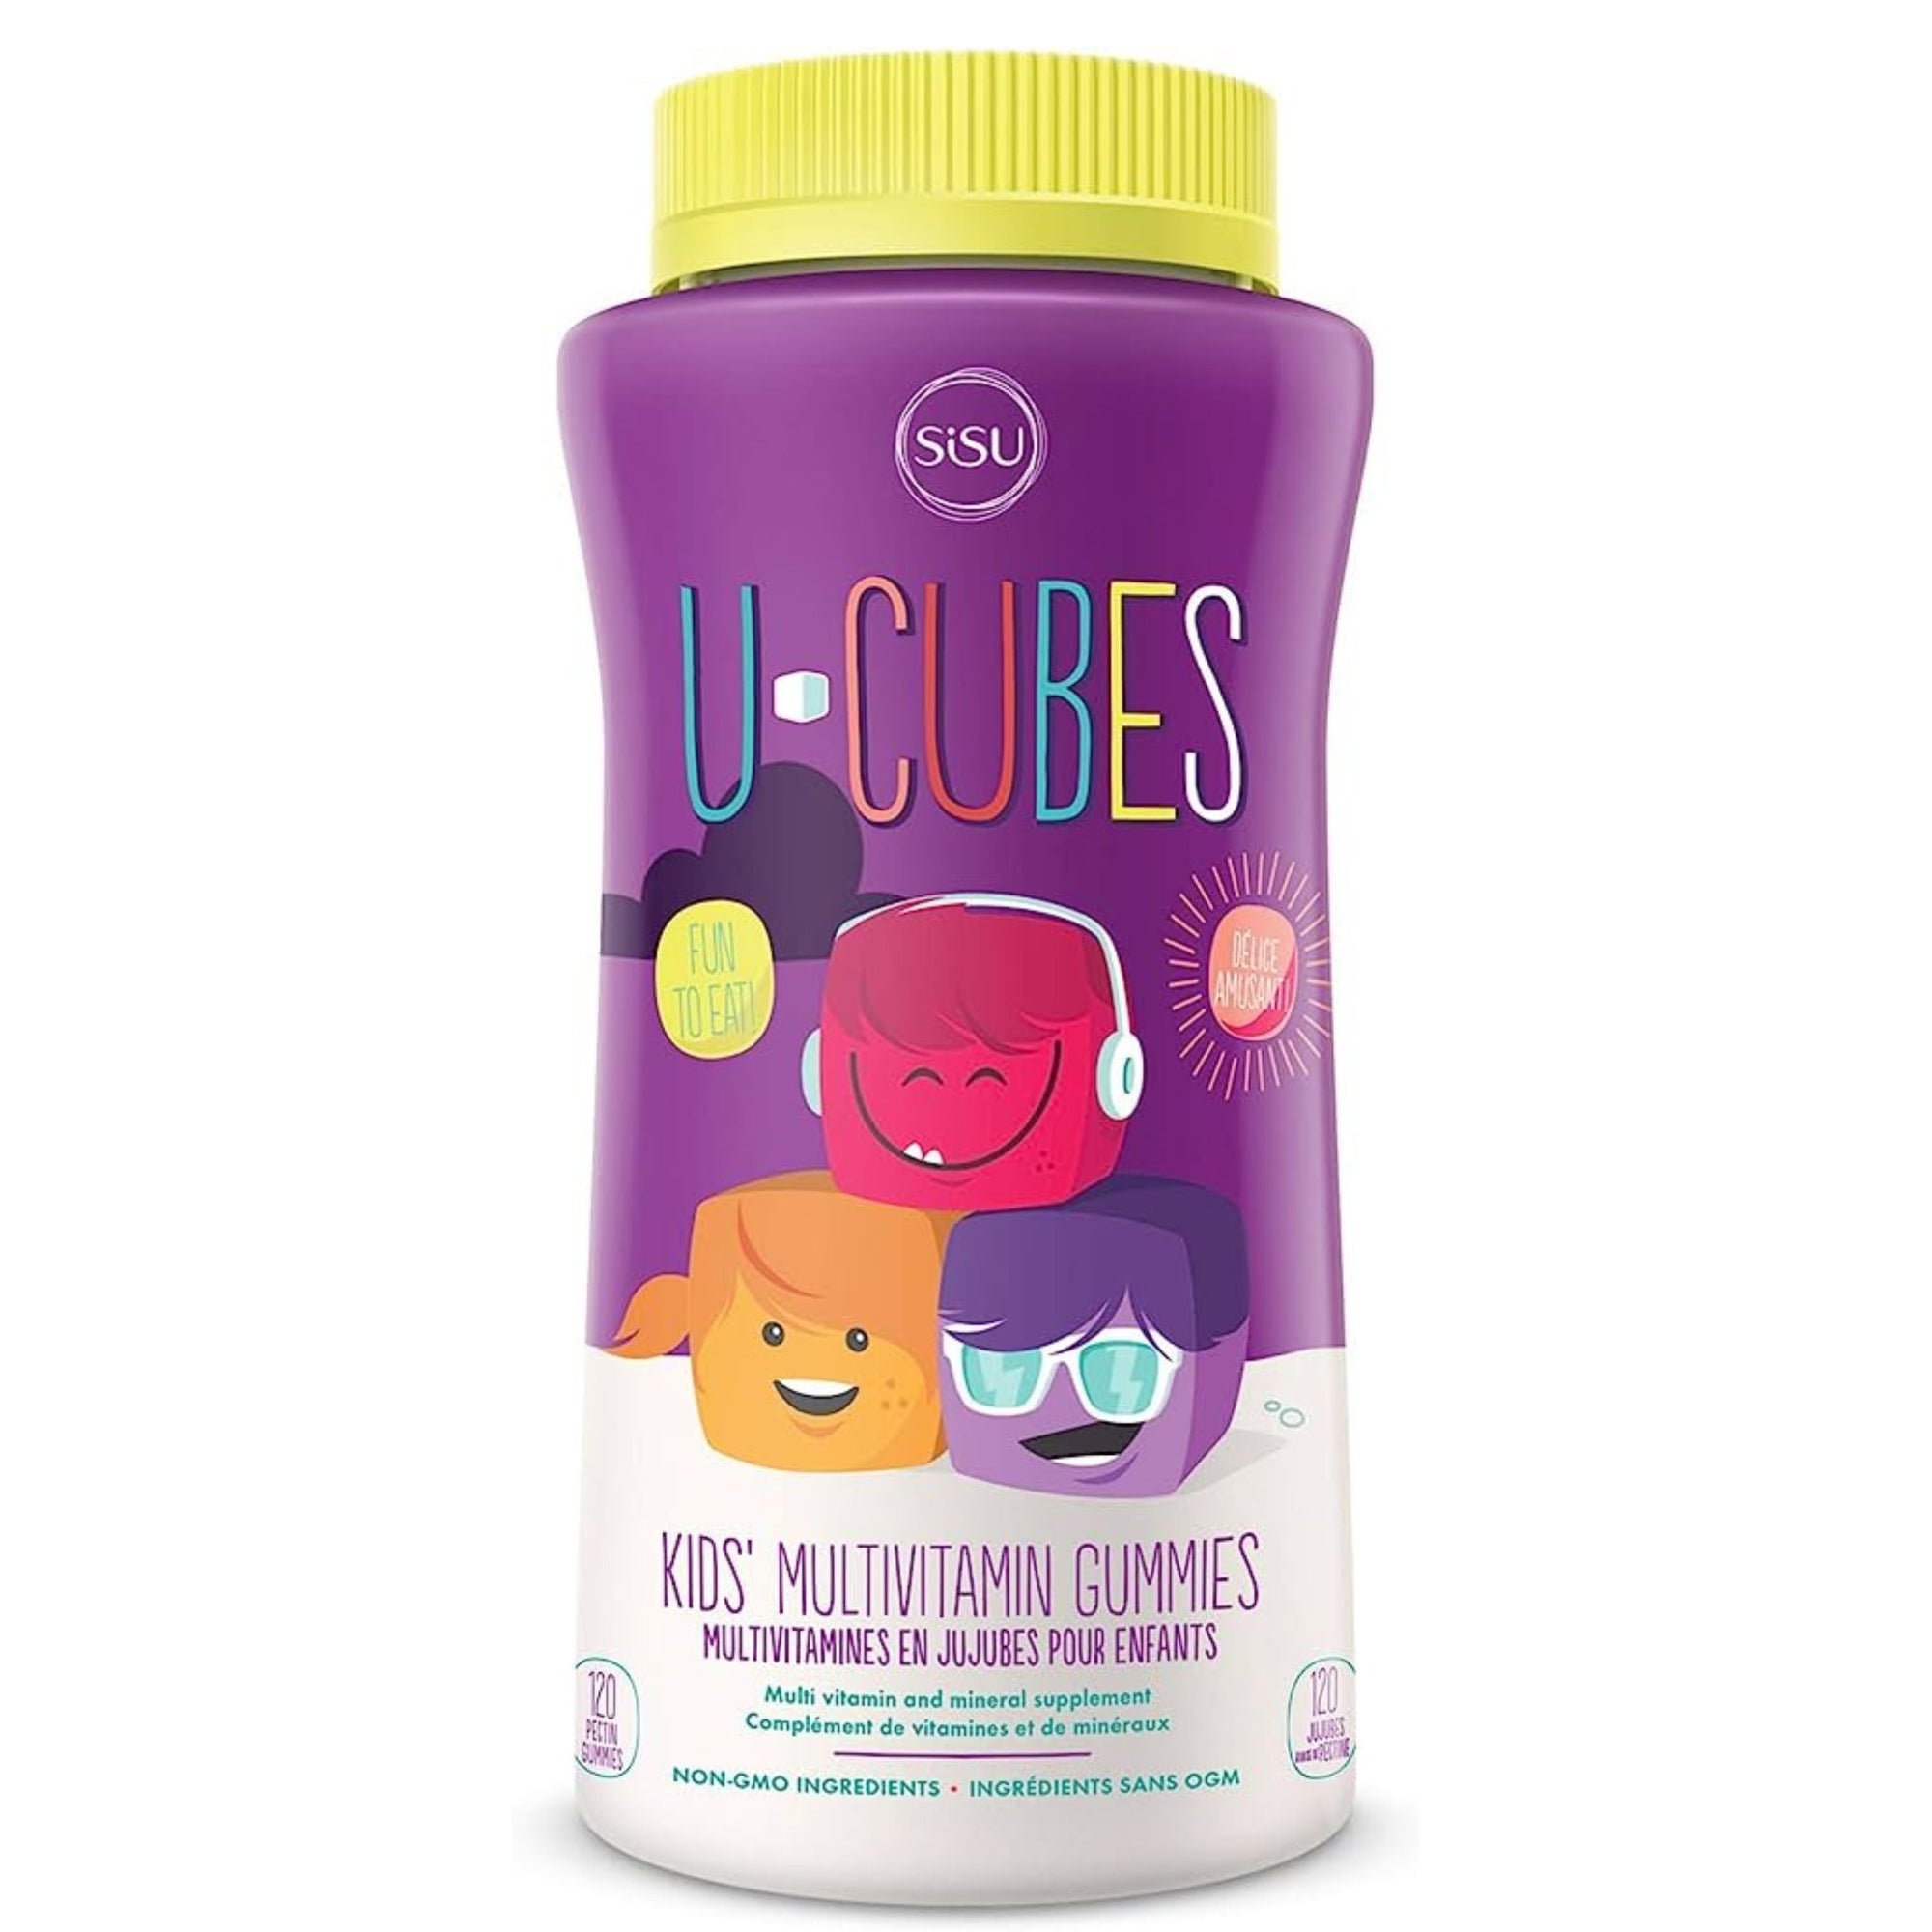 SiSU U-Cubes Kids Multivitamin Gummies: Fun and nutritious multivitamin gummies for children.